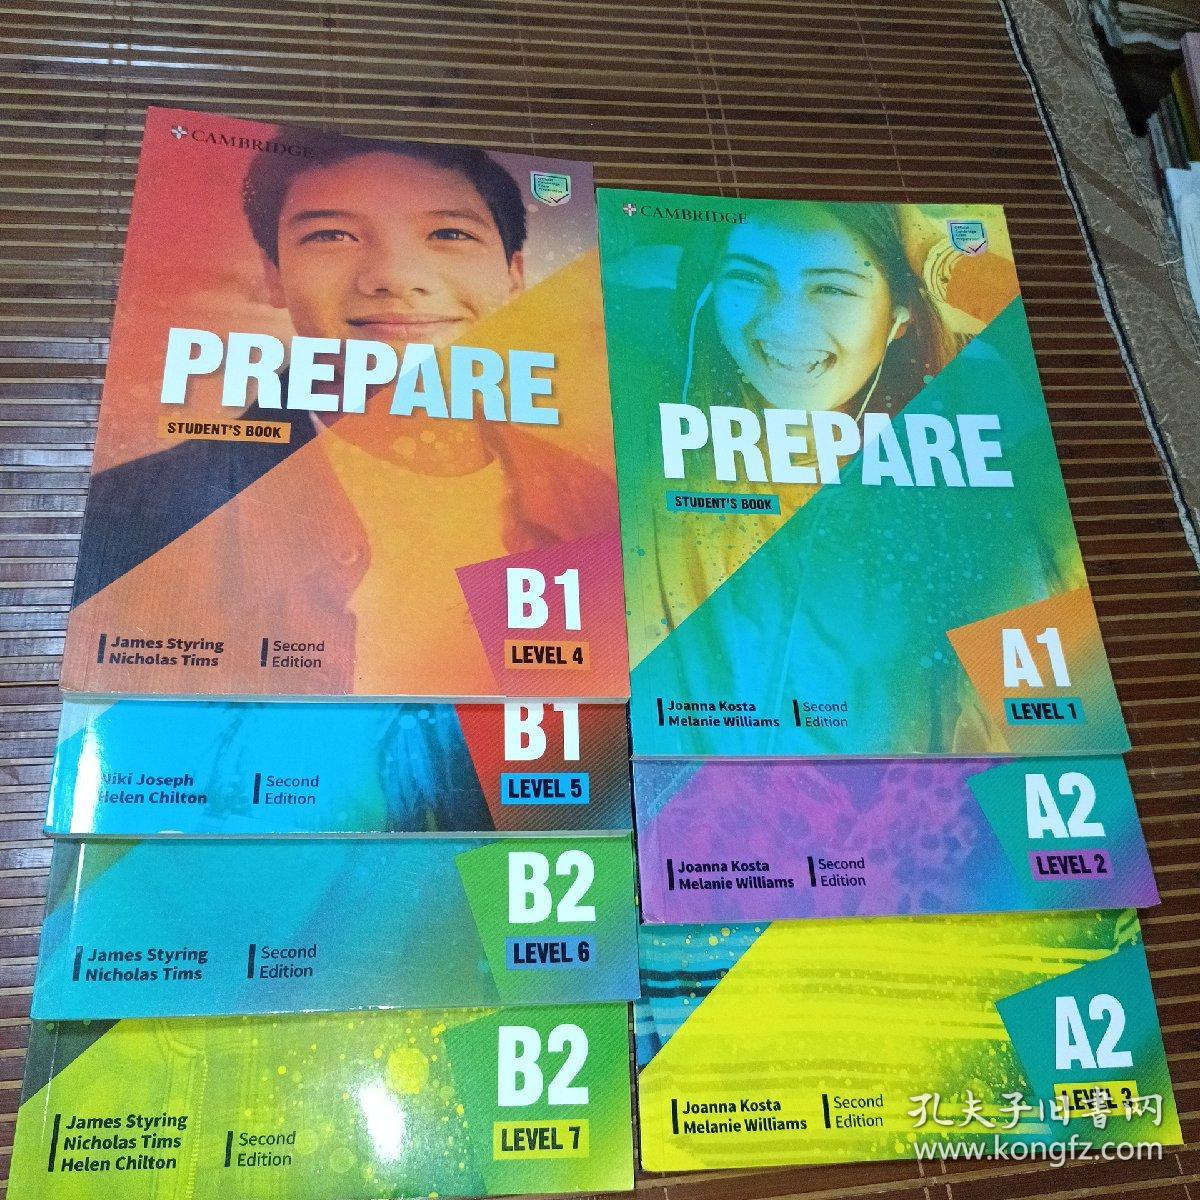 剑桥中学英语教材Prepare Student’s Book Level 1-7册